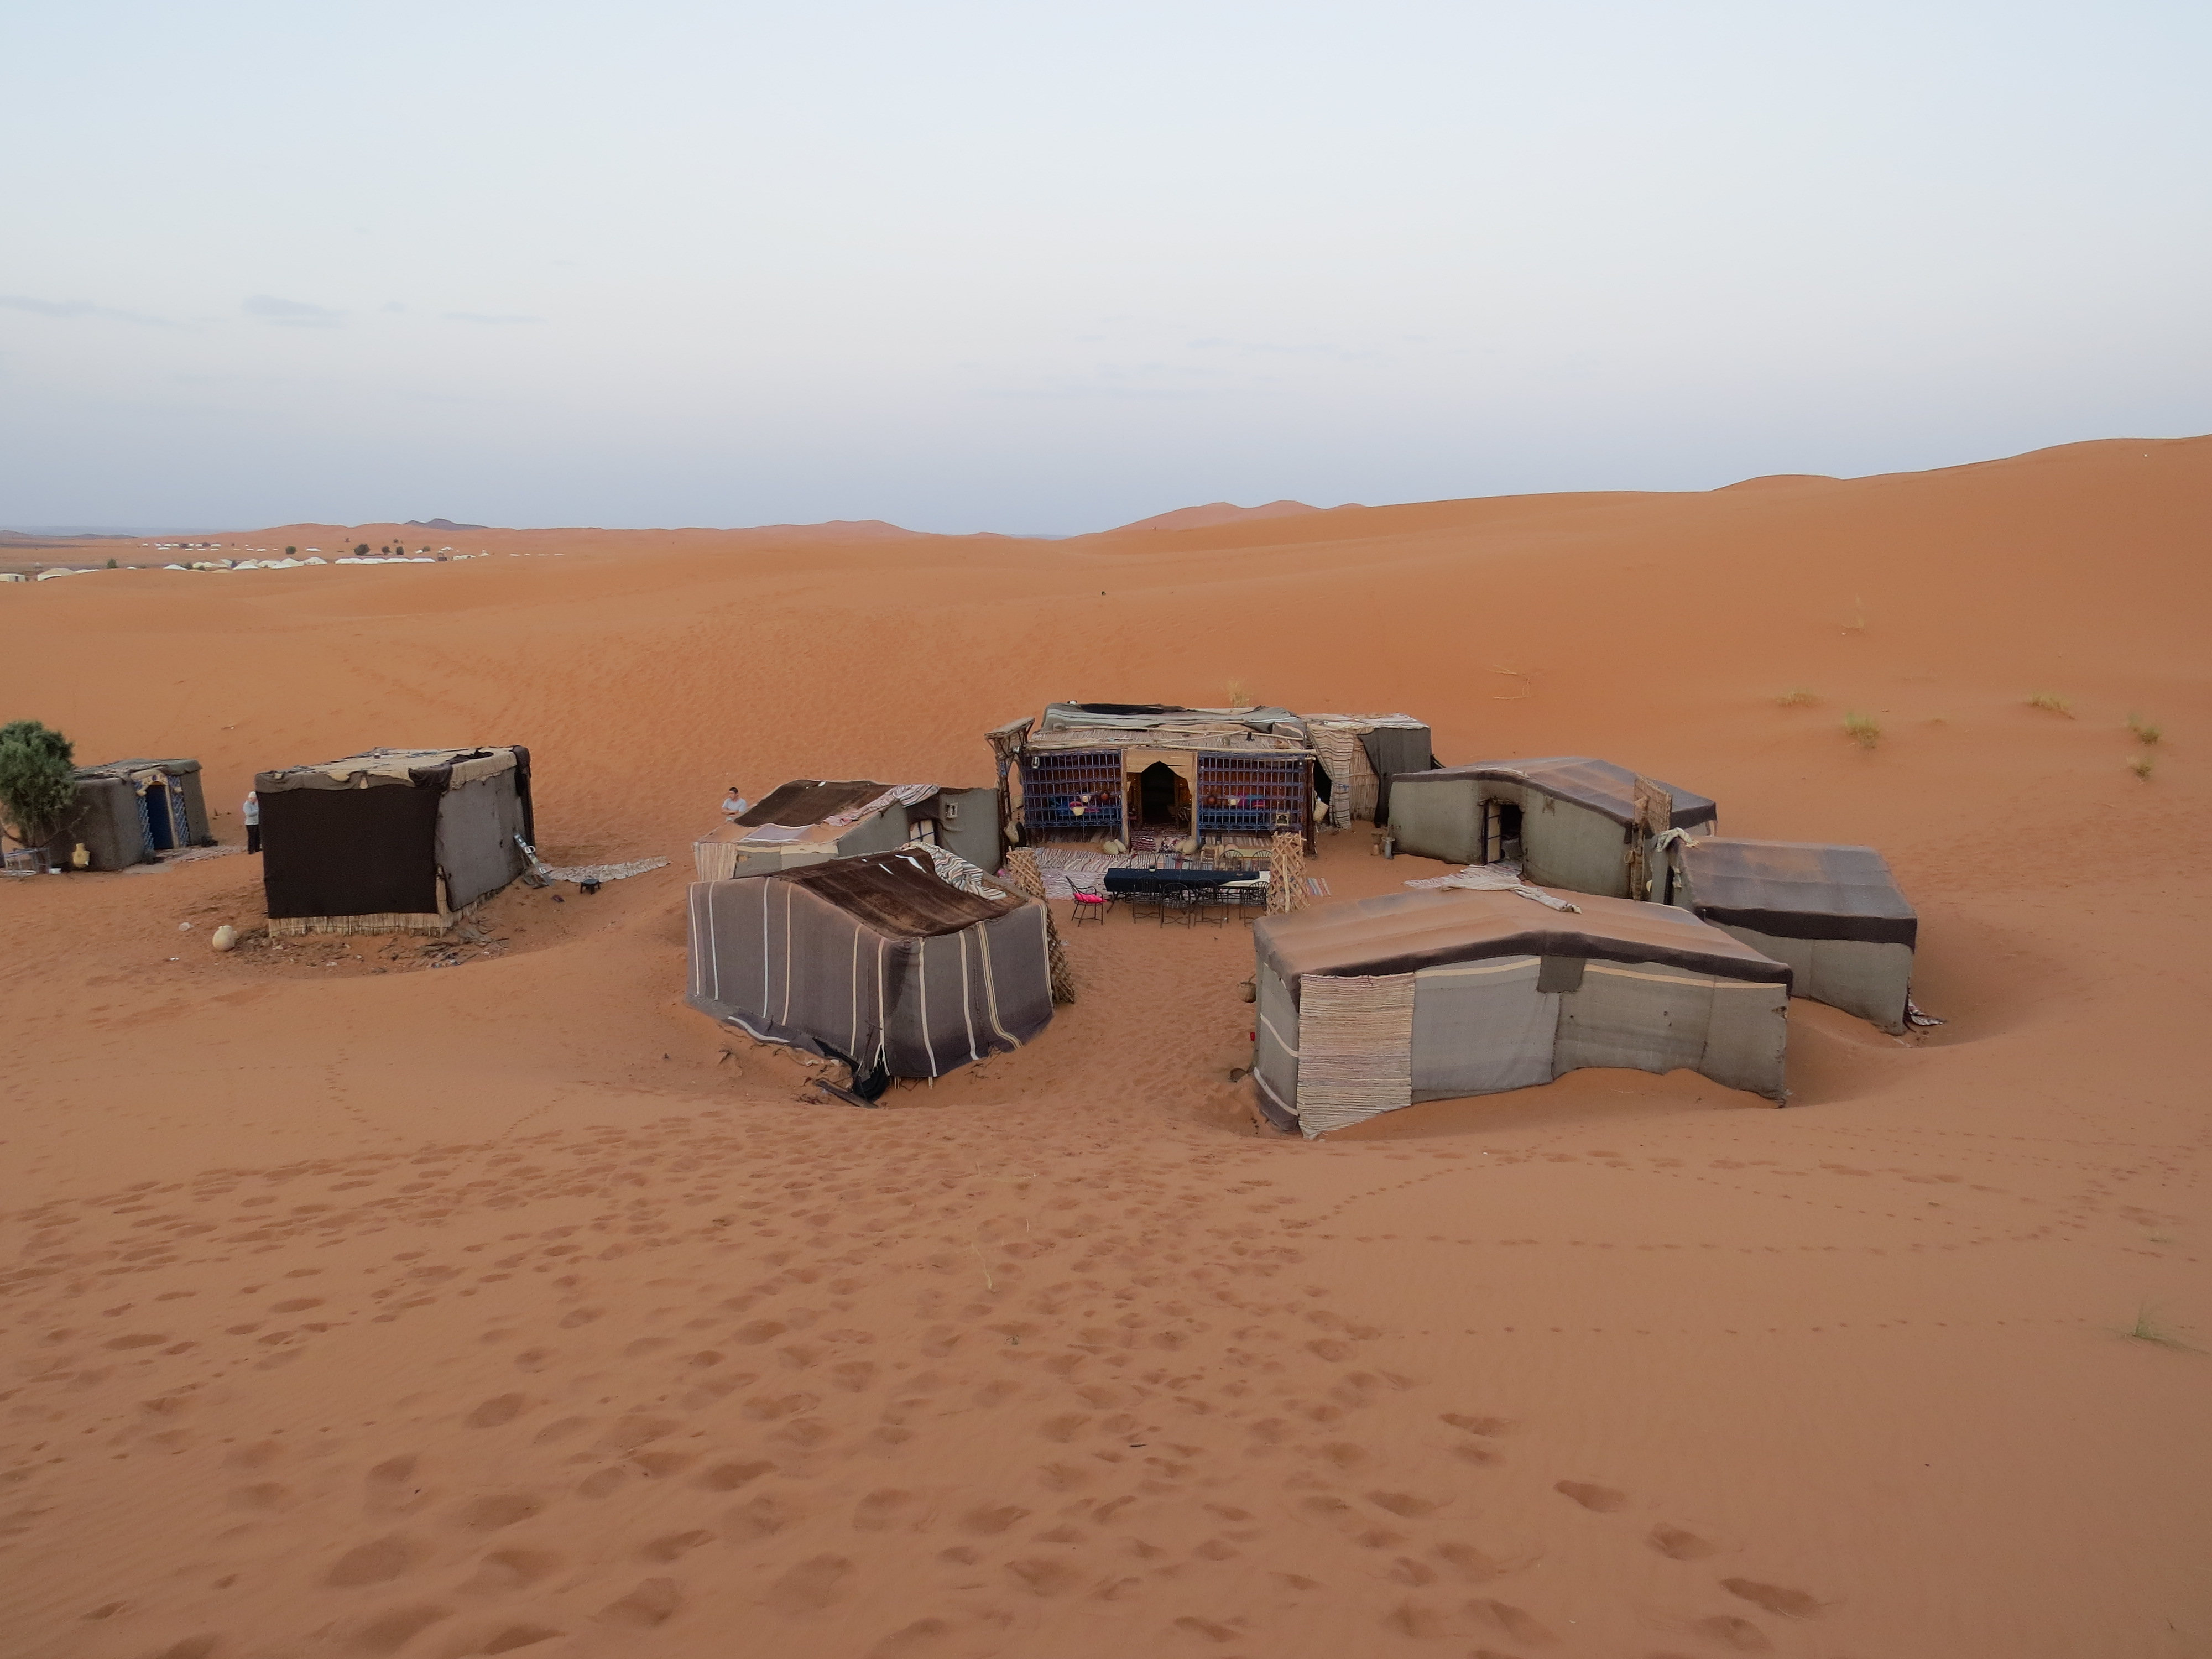 Notre campement dans le désert de l'Erg Chebbi